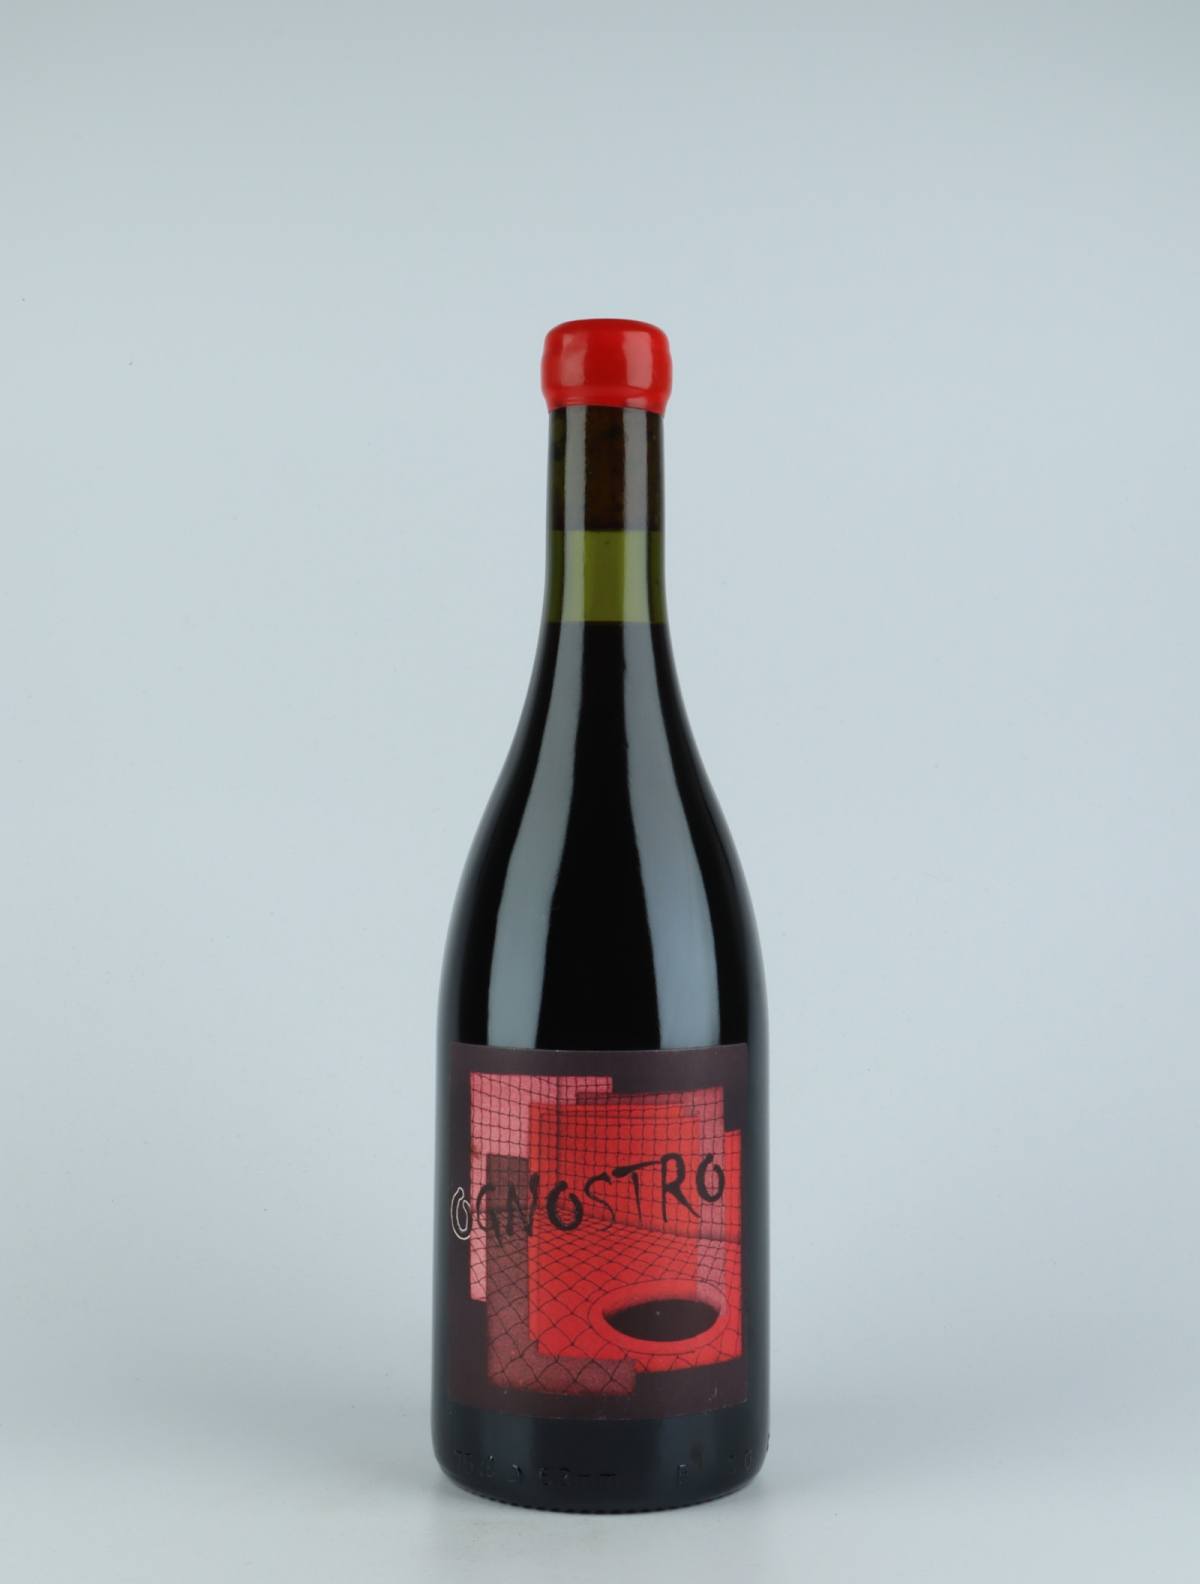 En flaske 2015 Ognostro Rosso Rødvin fra Marco Tinessa, Campanien i Italien